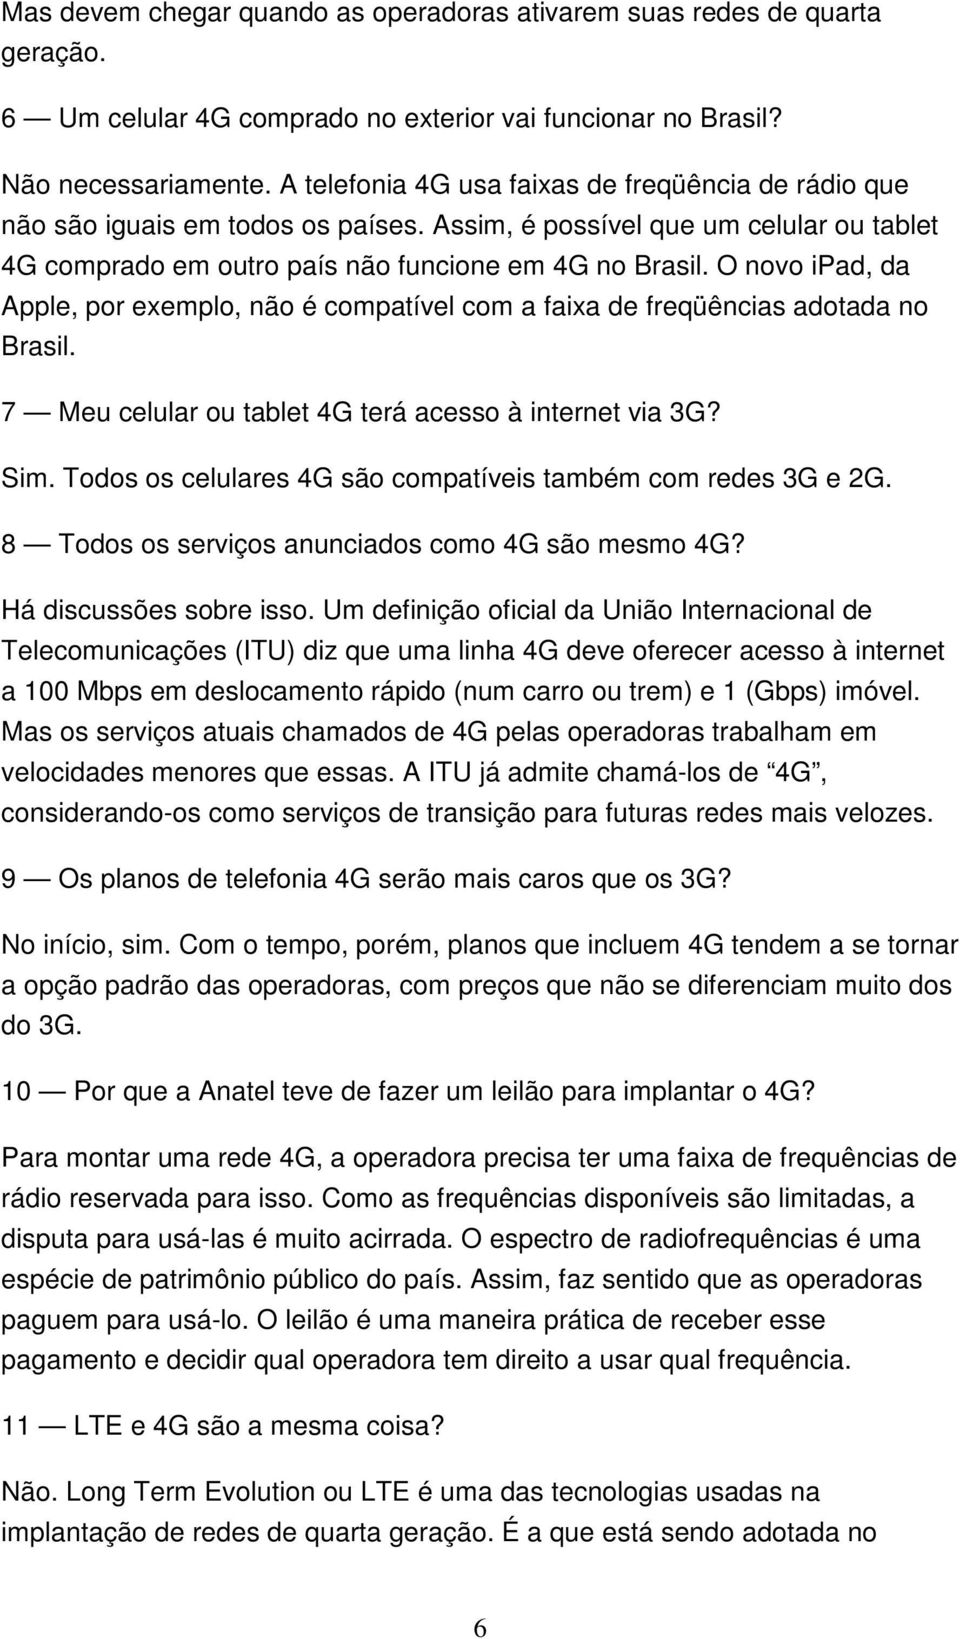 O novo ipad, da Apple, por exemplo, não é compatível com a faixa de freqüências adotada no Brasil. 7 Meu celular ou tablet 4G terá acesso à internet via 3G? Sim.